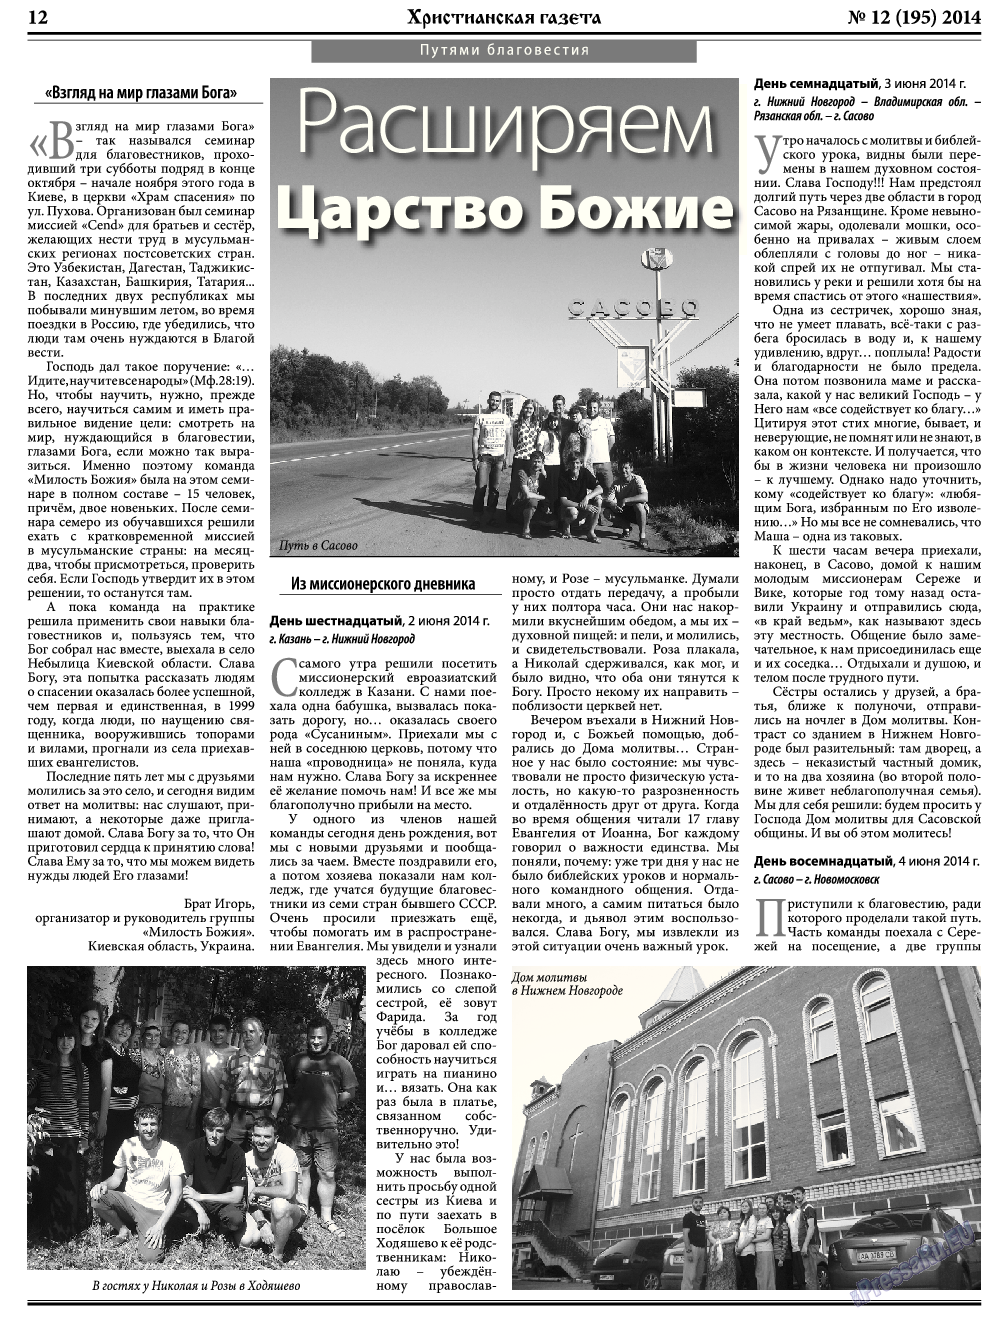 Христианская газета, газета. 2014 №12 стр.12